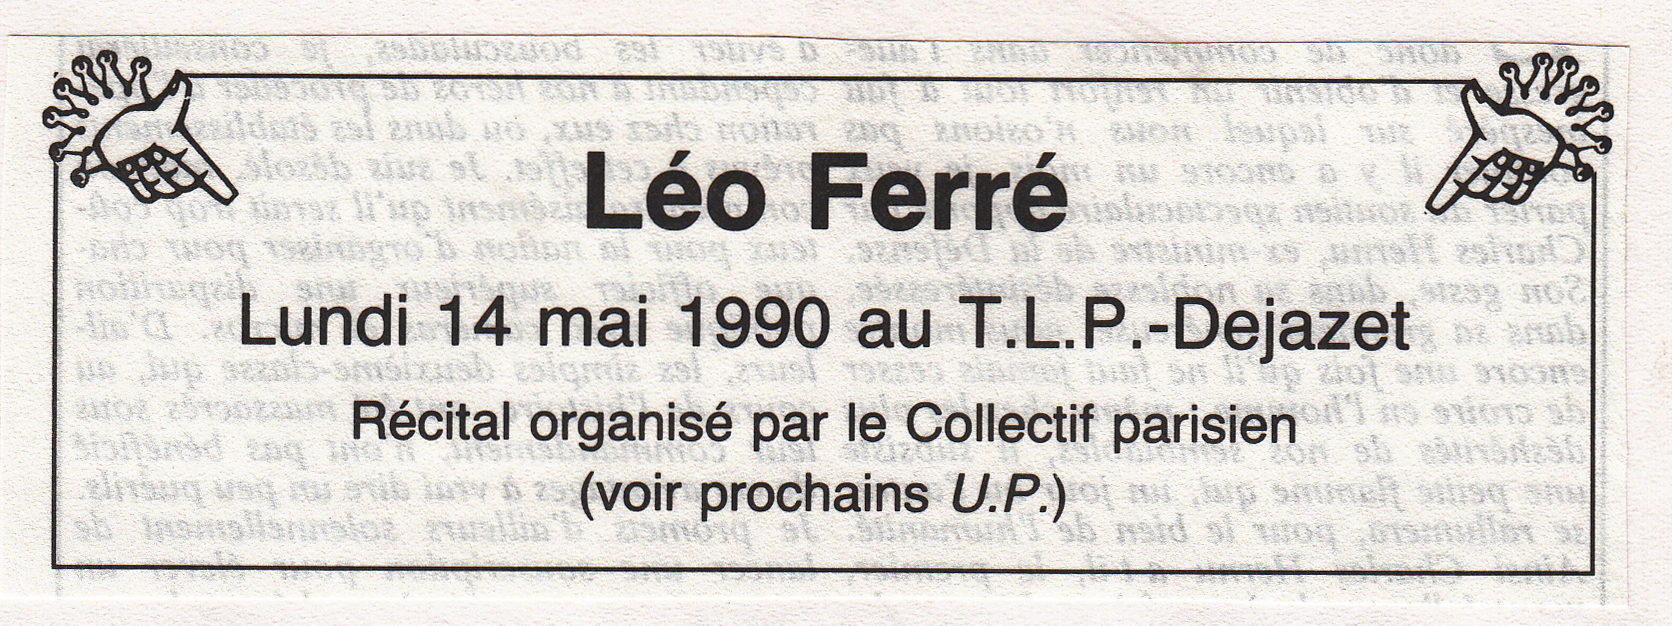 Léo Ferré - Union pacifiste n° 262, de mars 1990